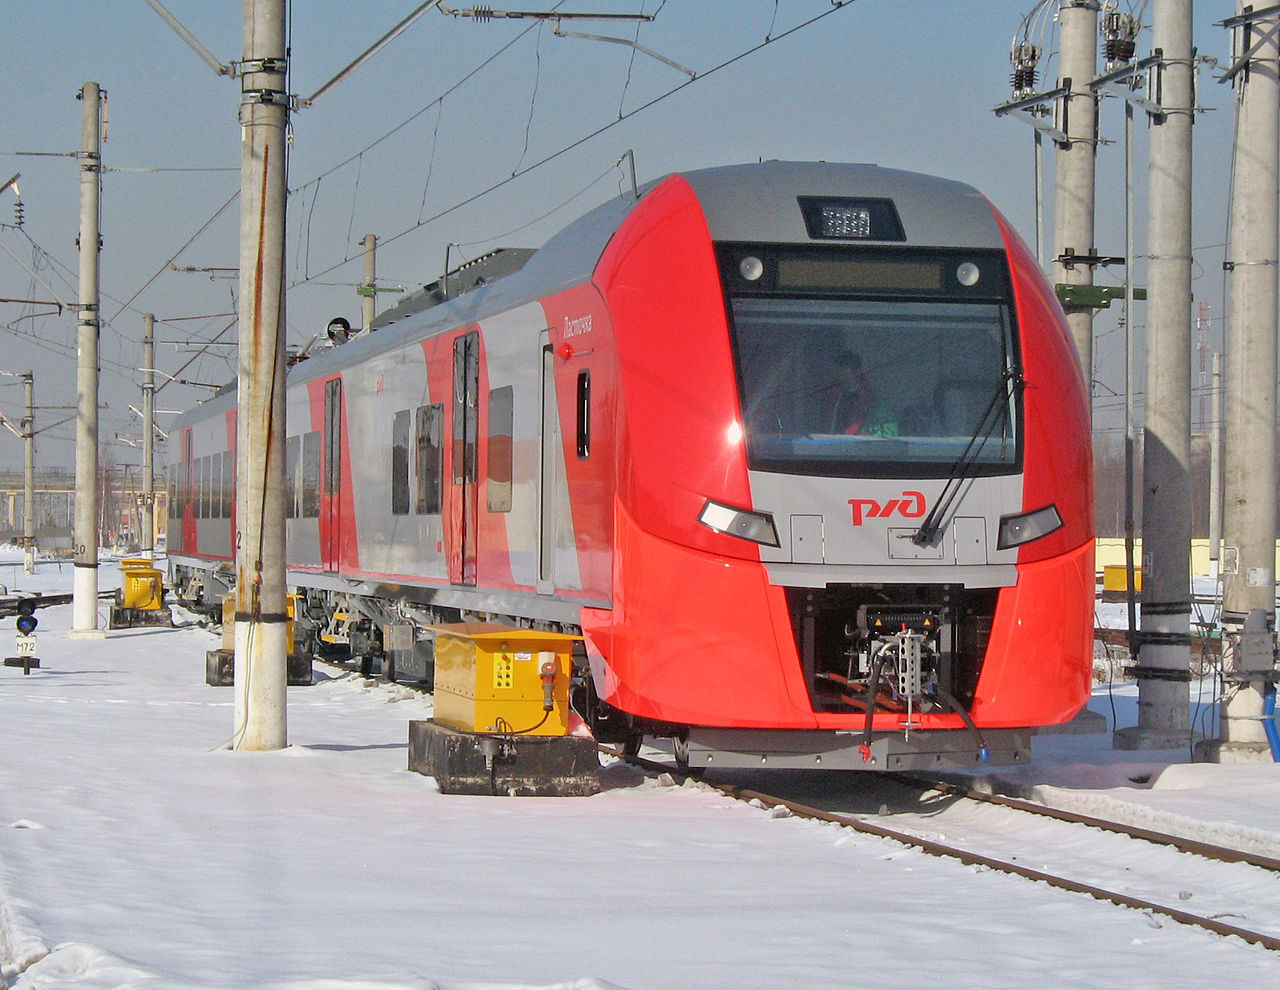 Агентство туристической информации сообщило о ценах на новогодние железнодорожные круизы